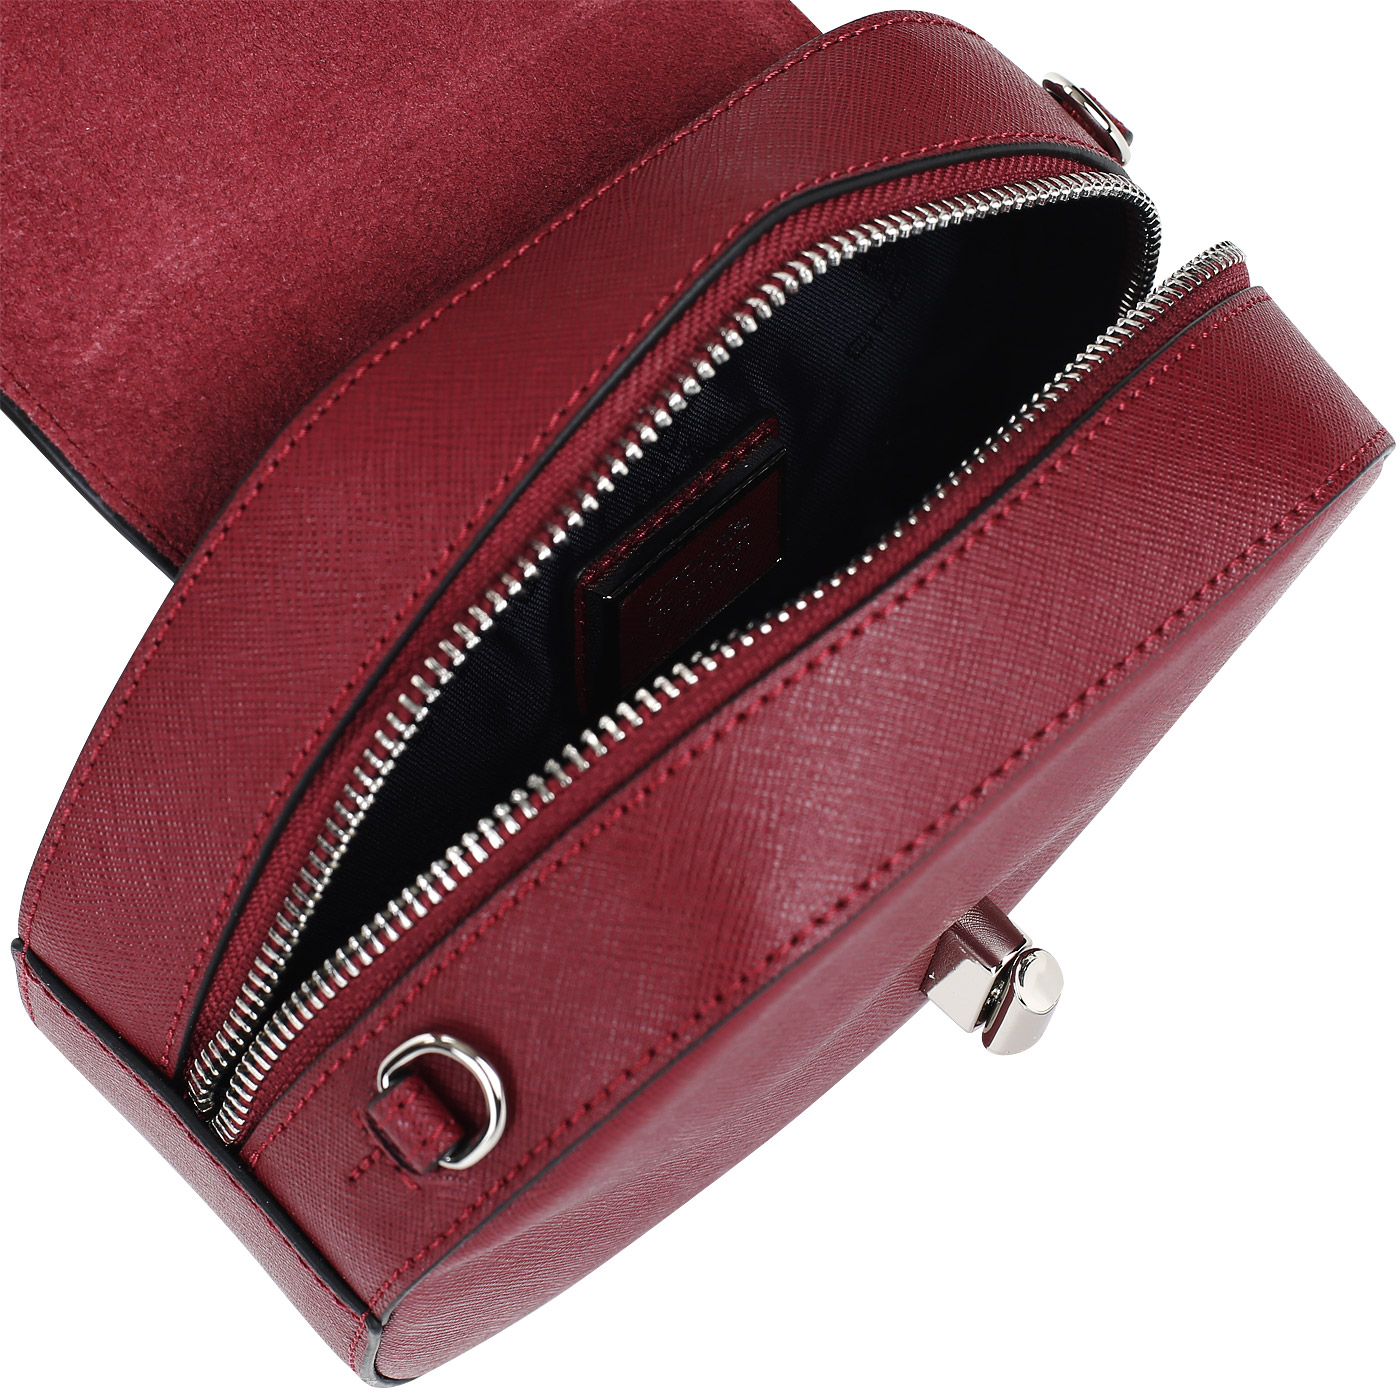 Бордовая сумочка Cromia Perla